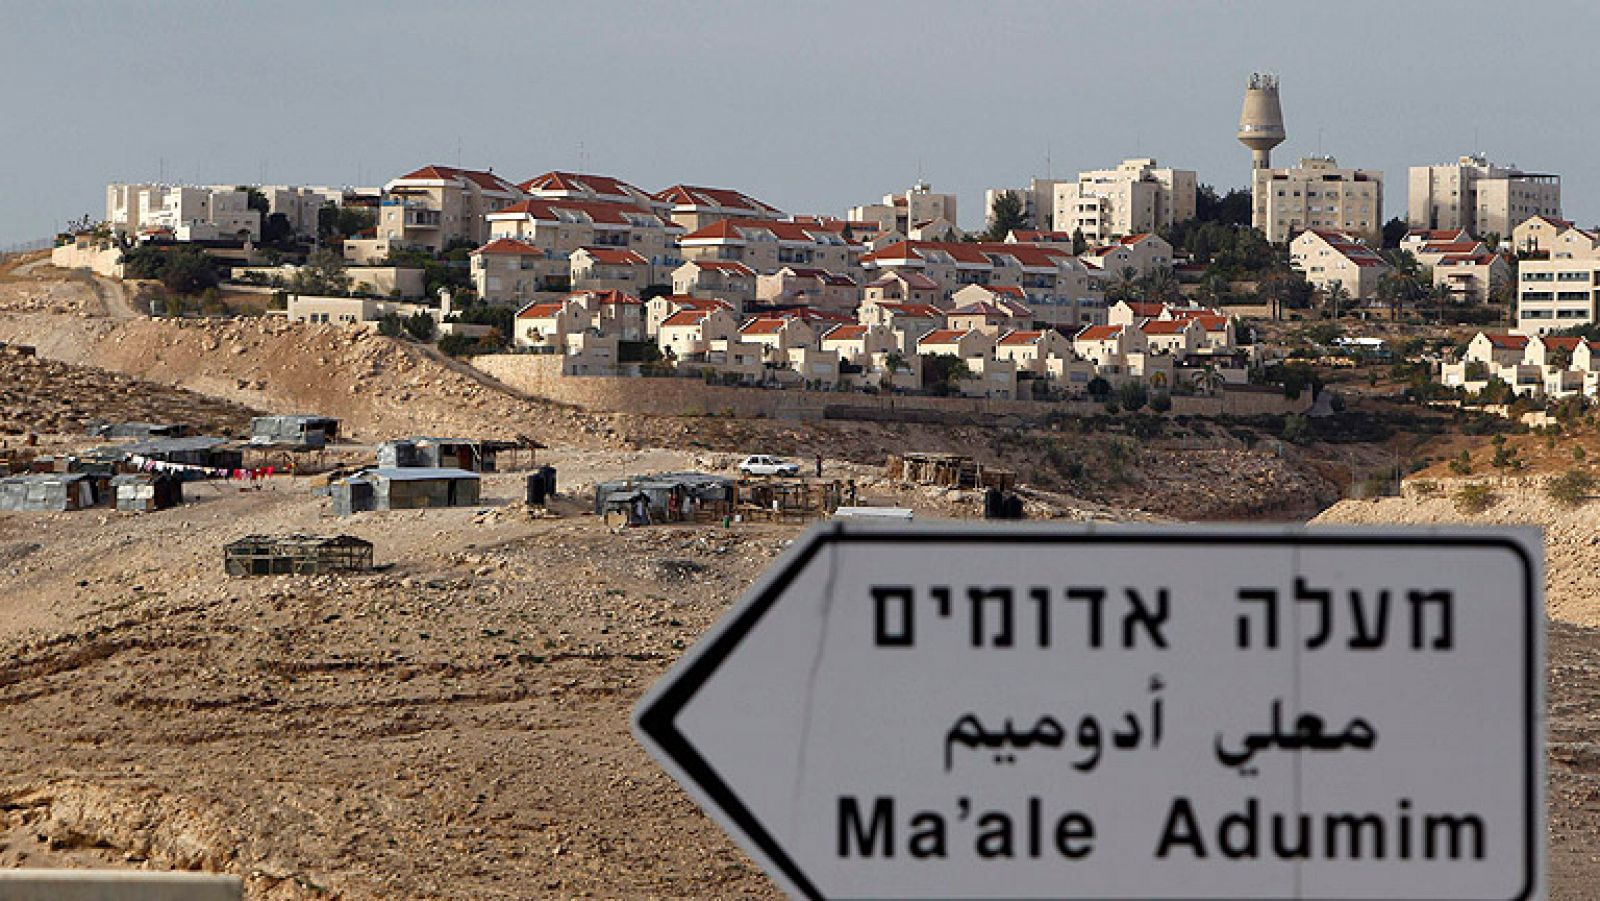 Los nuevos asentamientos dificultan el proceso de paz entre Israel y Palestina